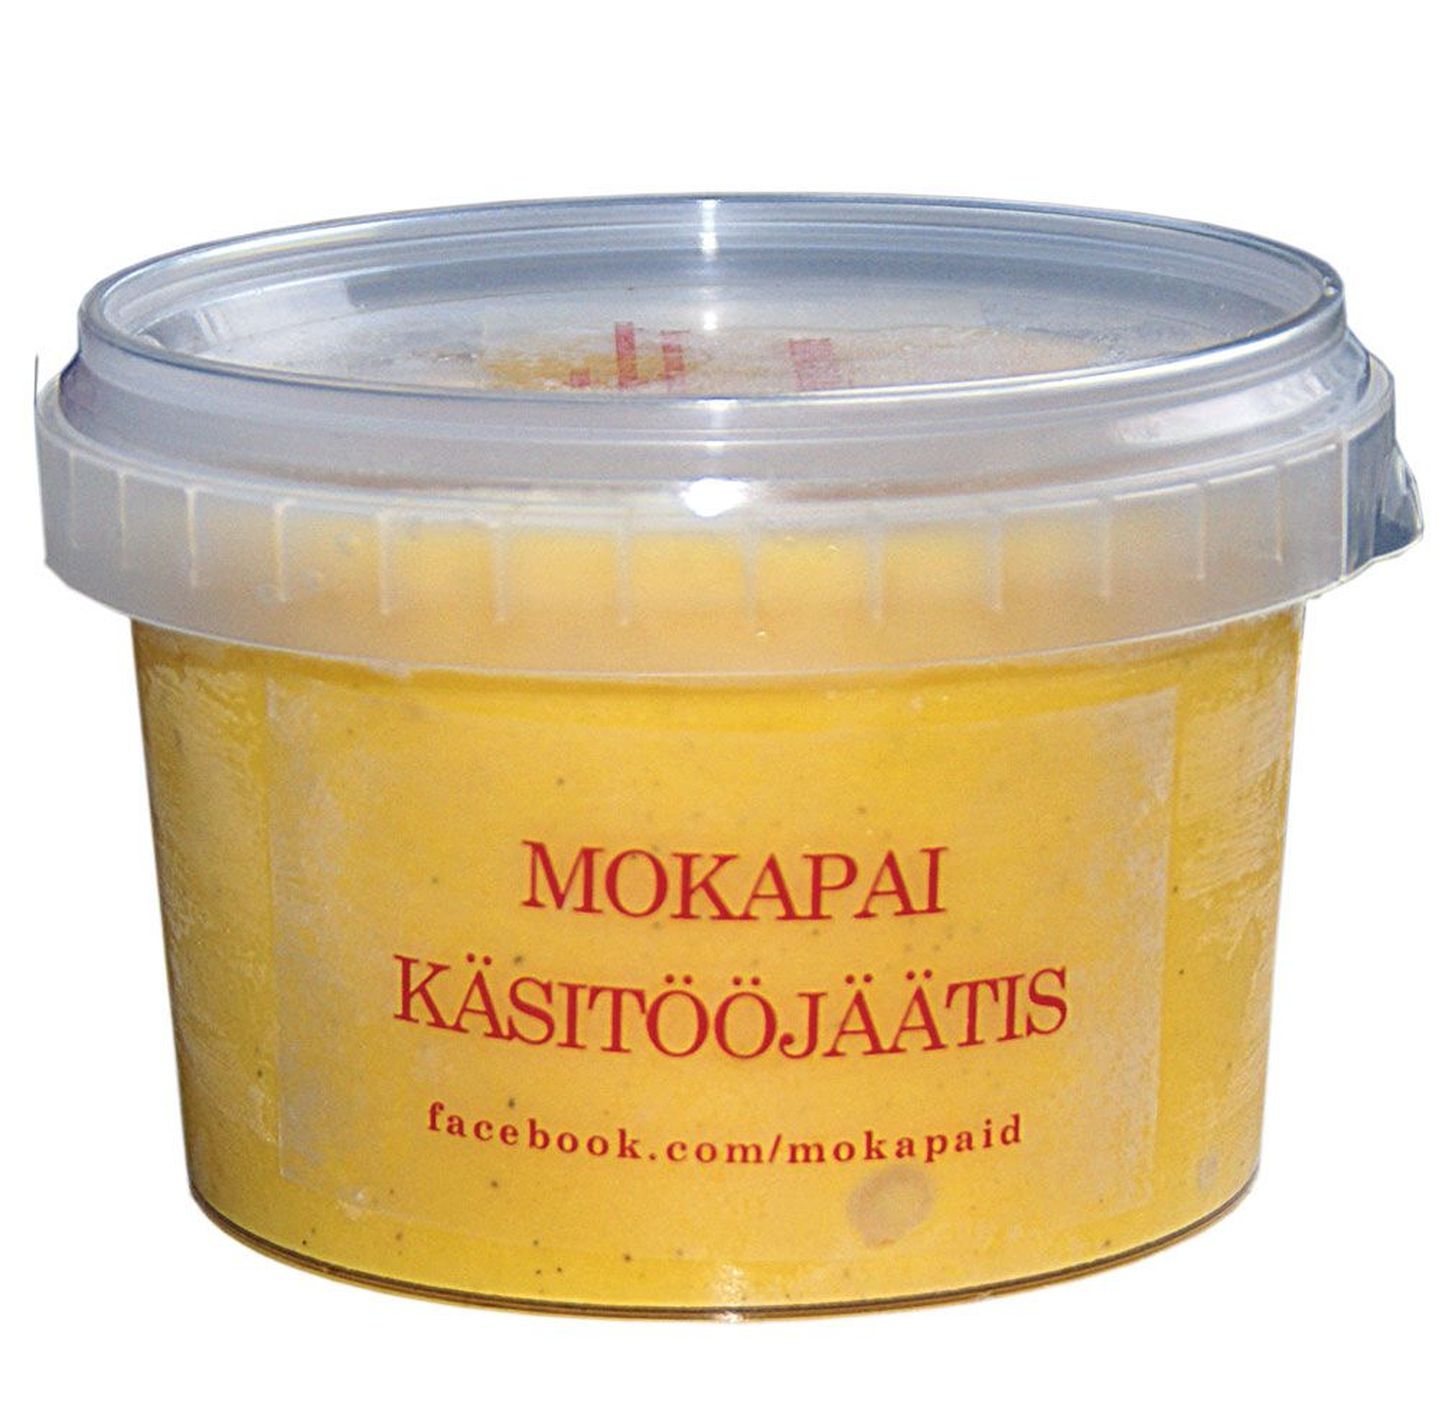 Mango jäätis on Mokapai üks populaarsemaid tooteid.